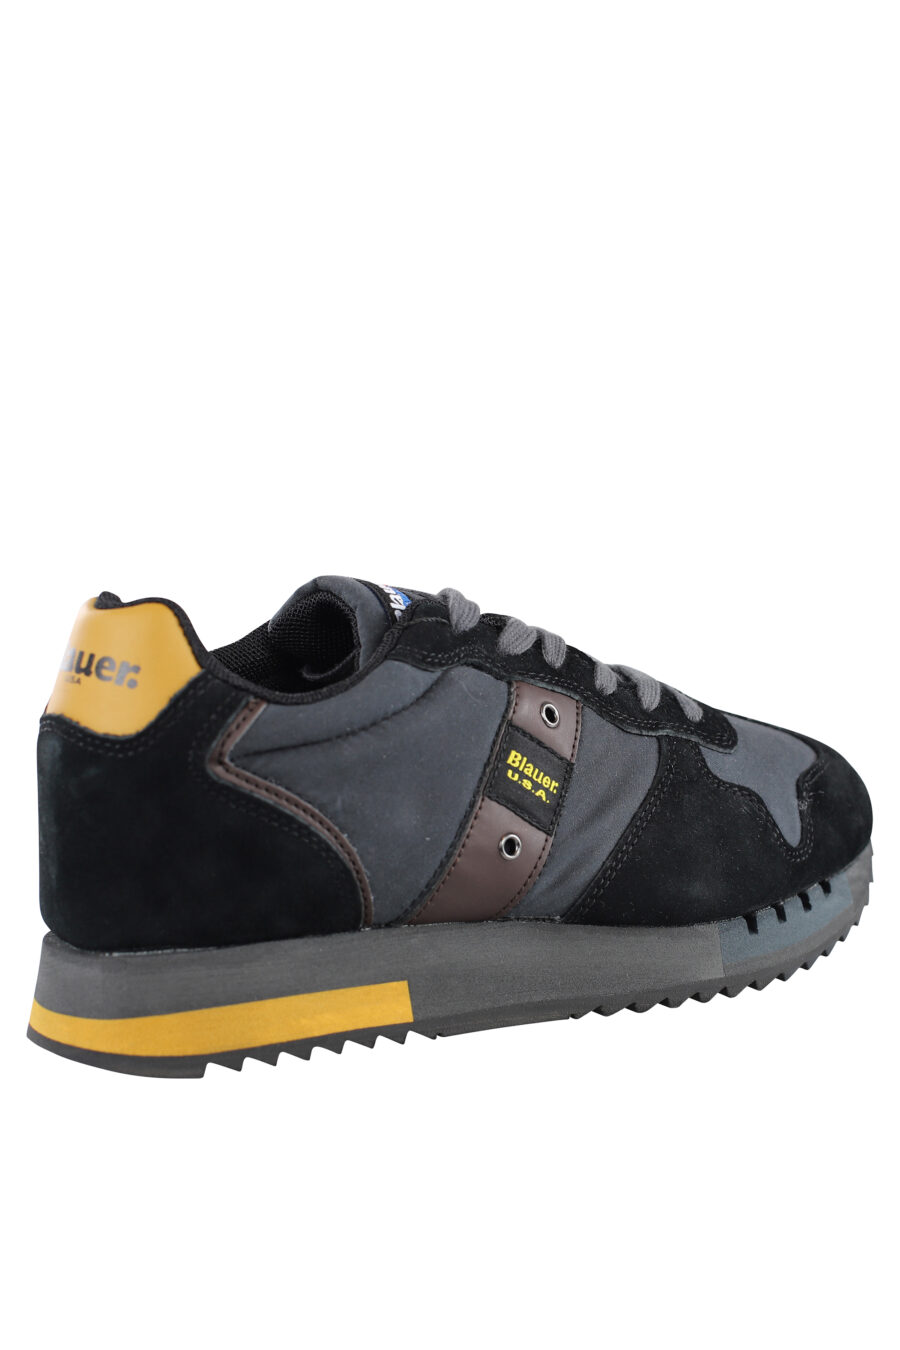 Zapatillas "queen" negras con detalles amarillos y logo - IMG 7084